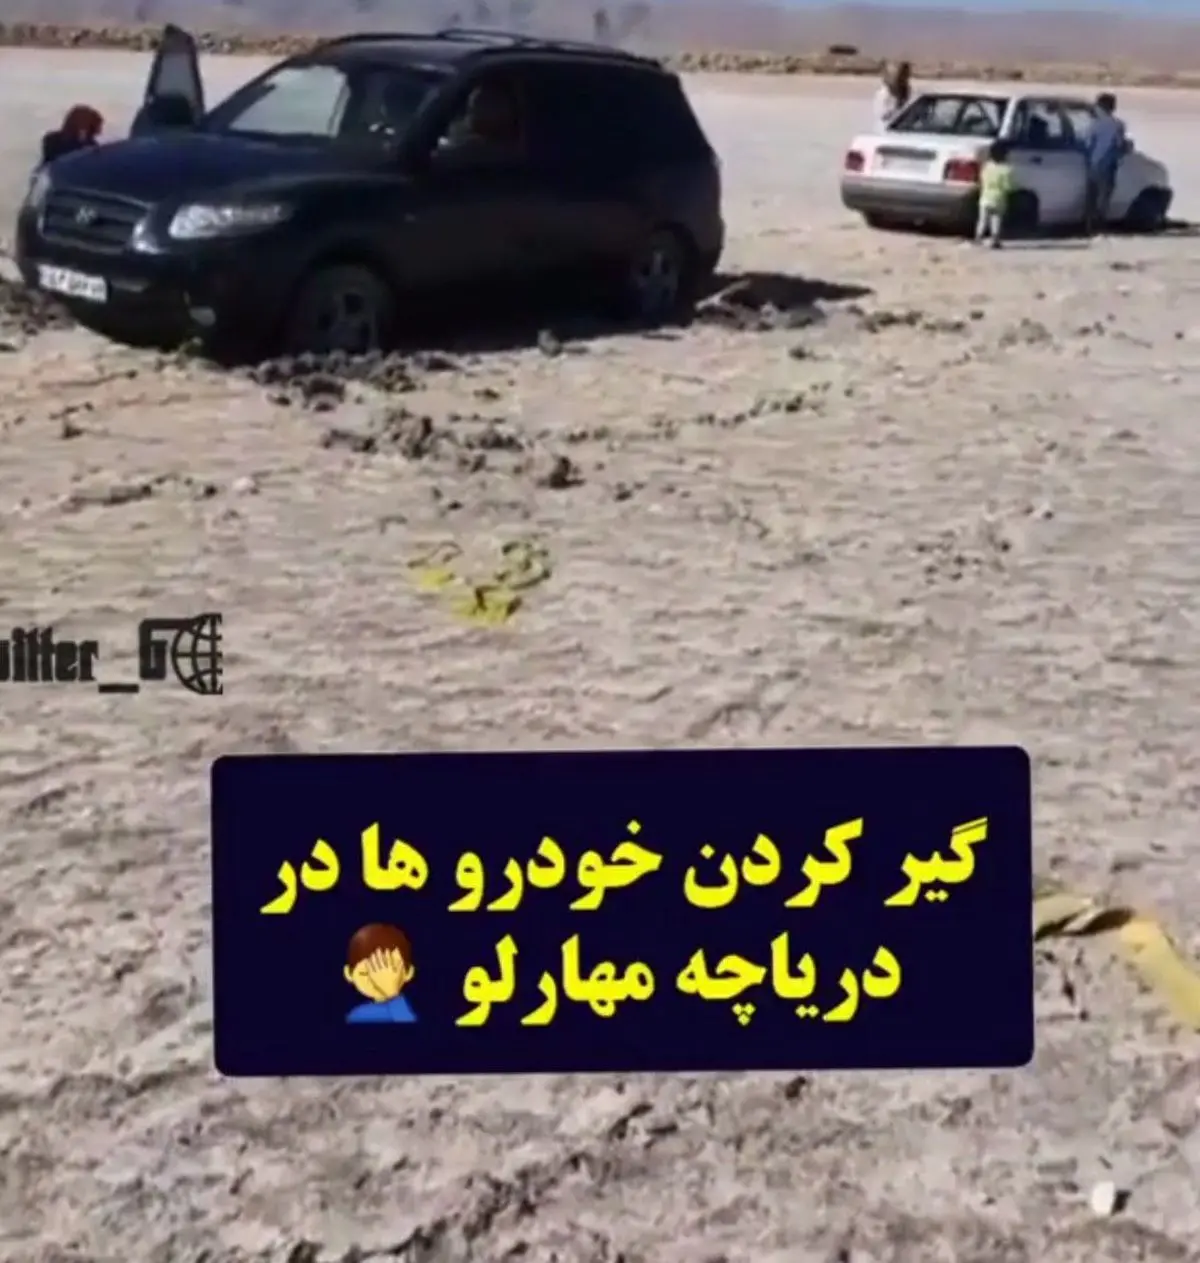 وضعیت عجیب امروز خودروها در دریاچه مهارلو شیراز+ویدئو 